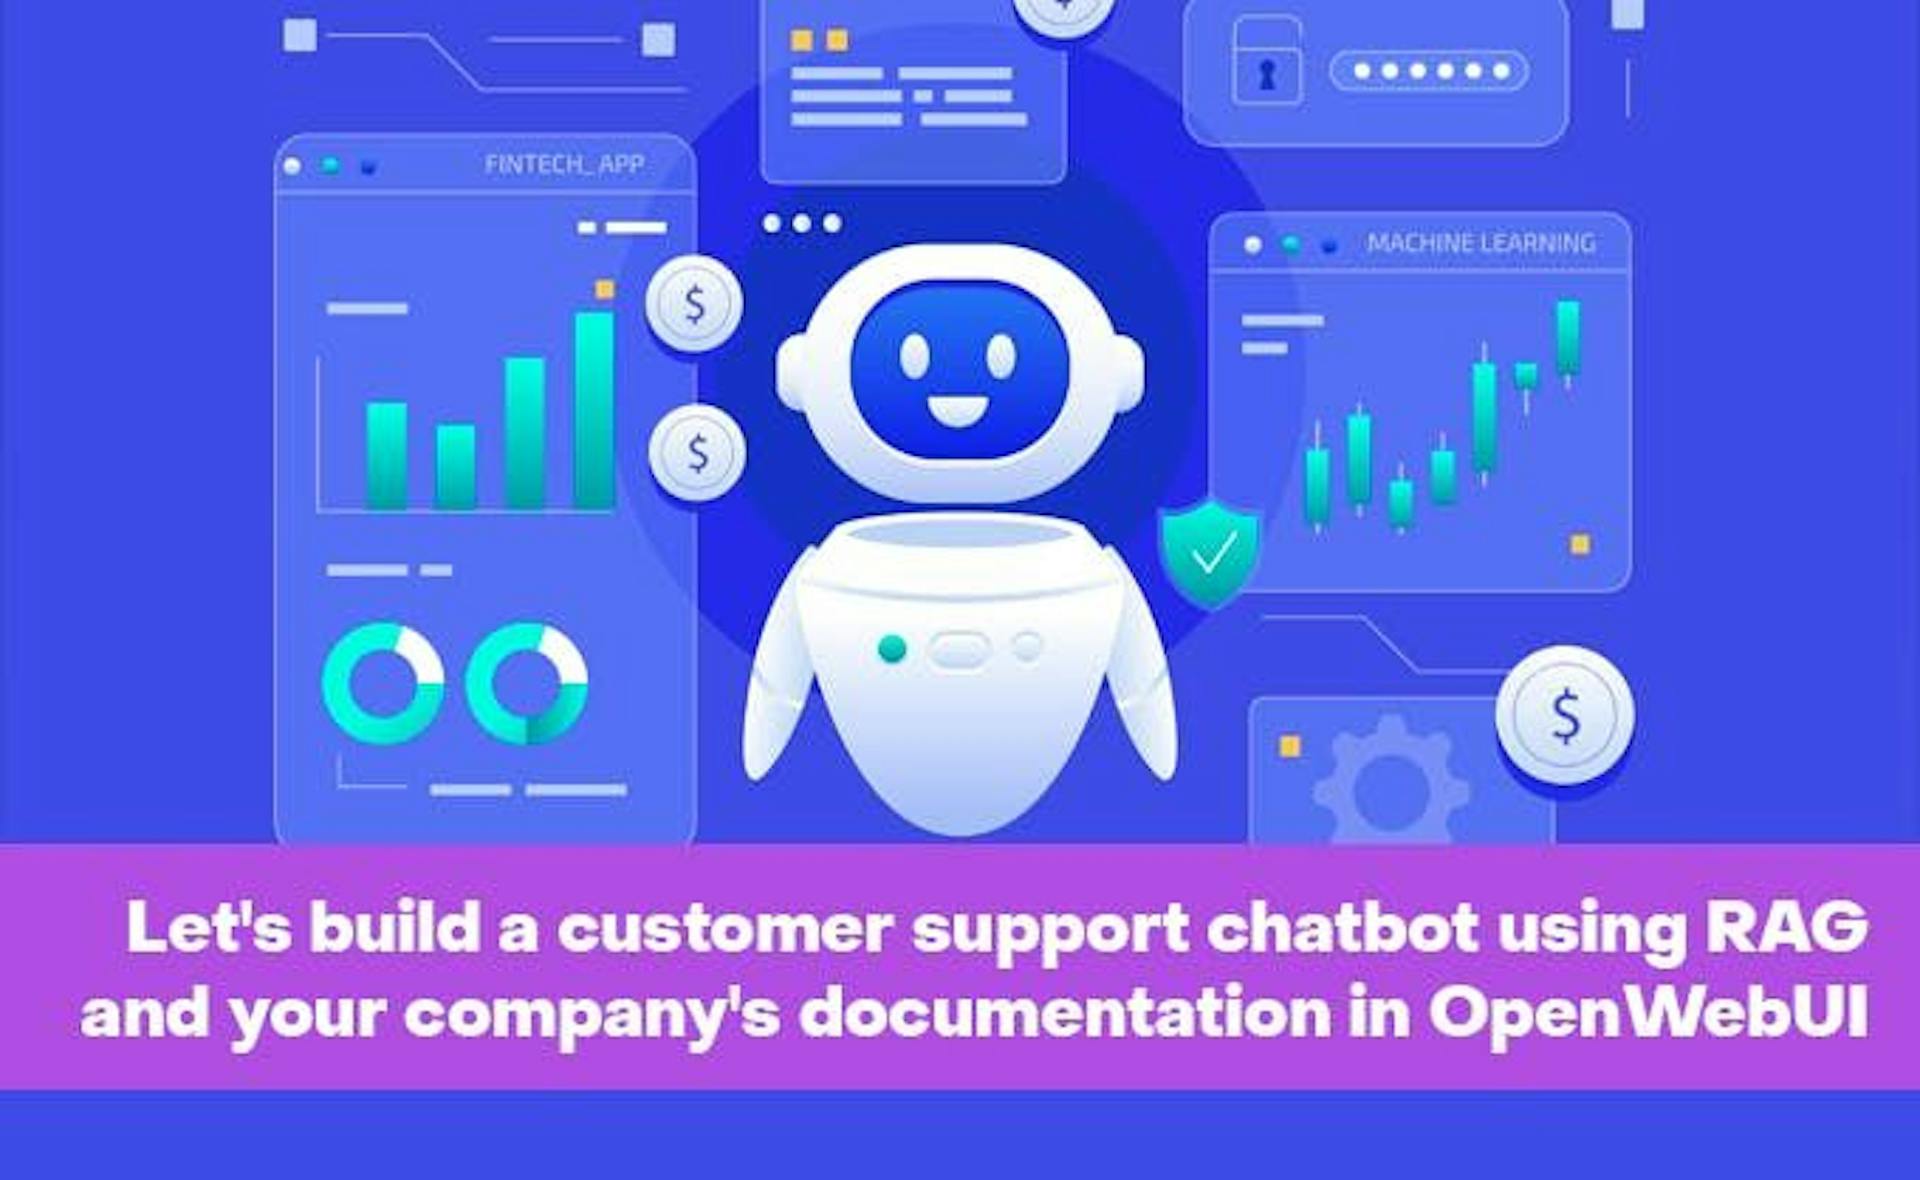 featured image - Hãy xây dựng một chatbot hỗ trợ khách hàng bằng RAG và tài liệu của công ty bạn trong OpenWebUI